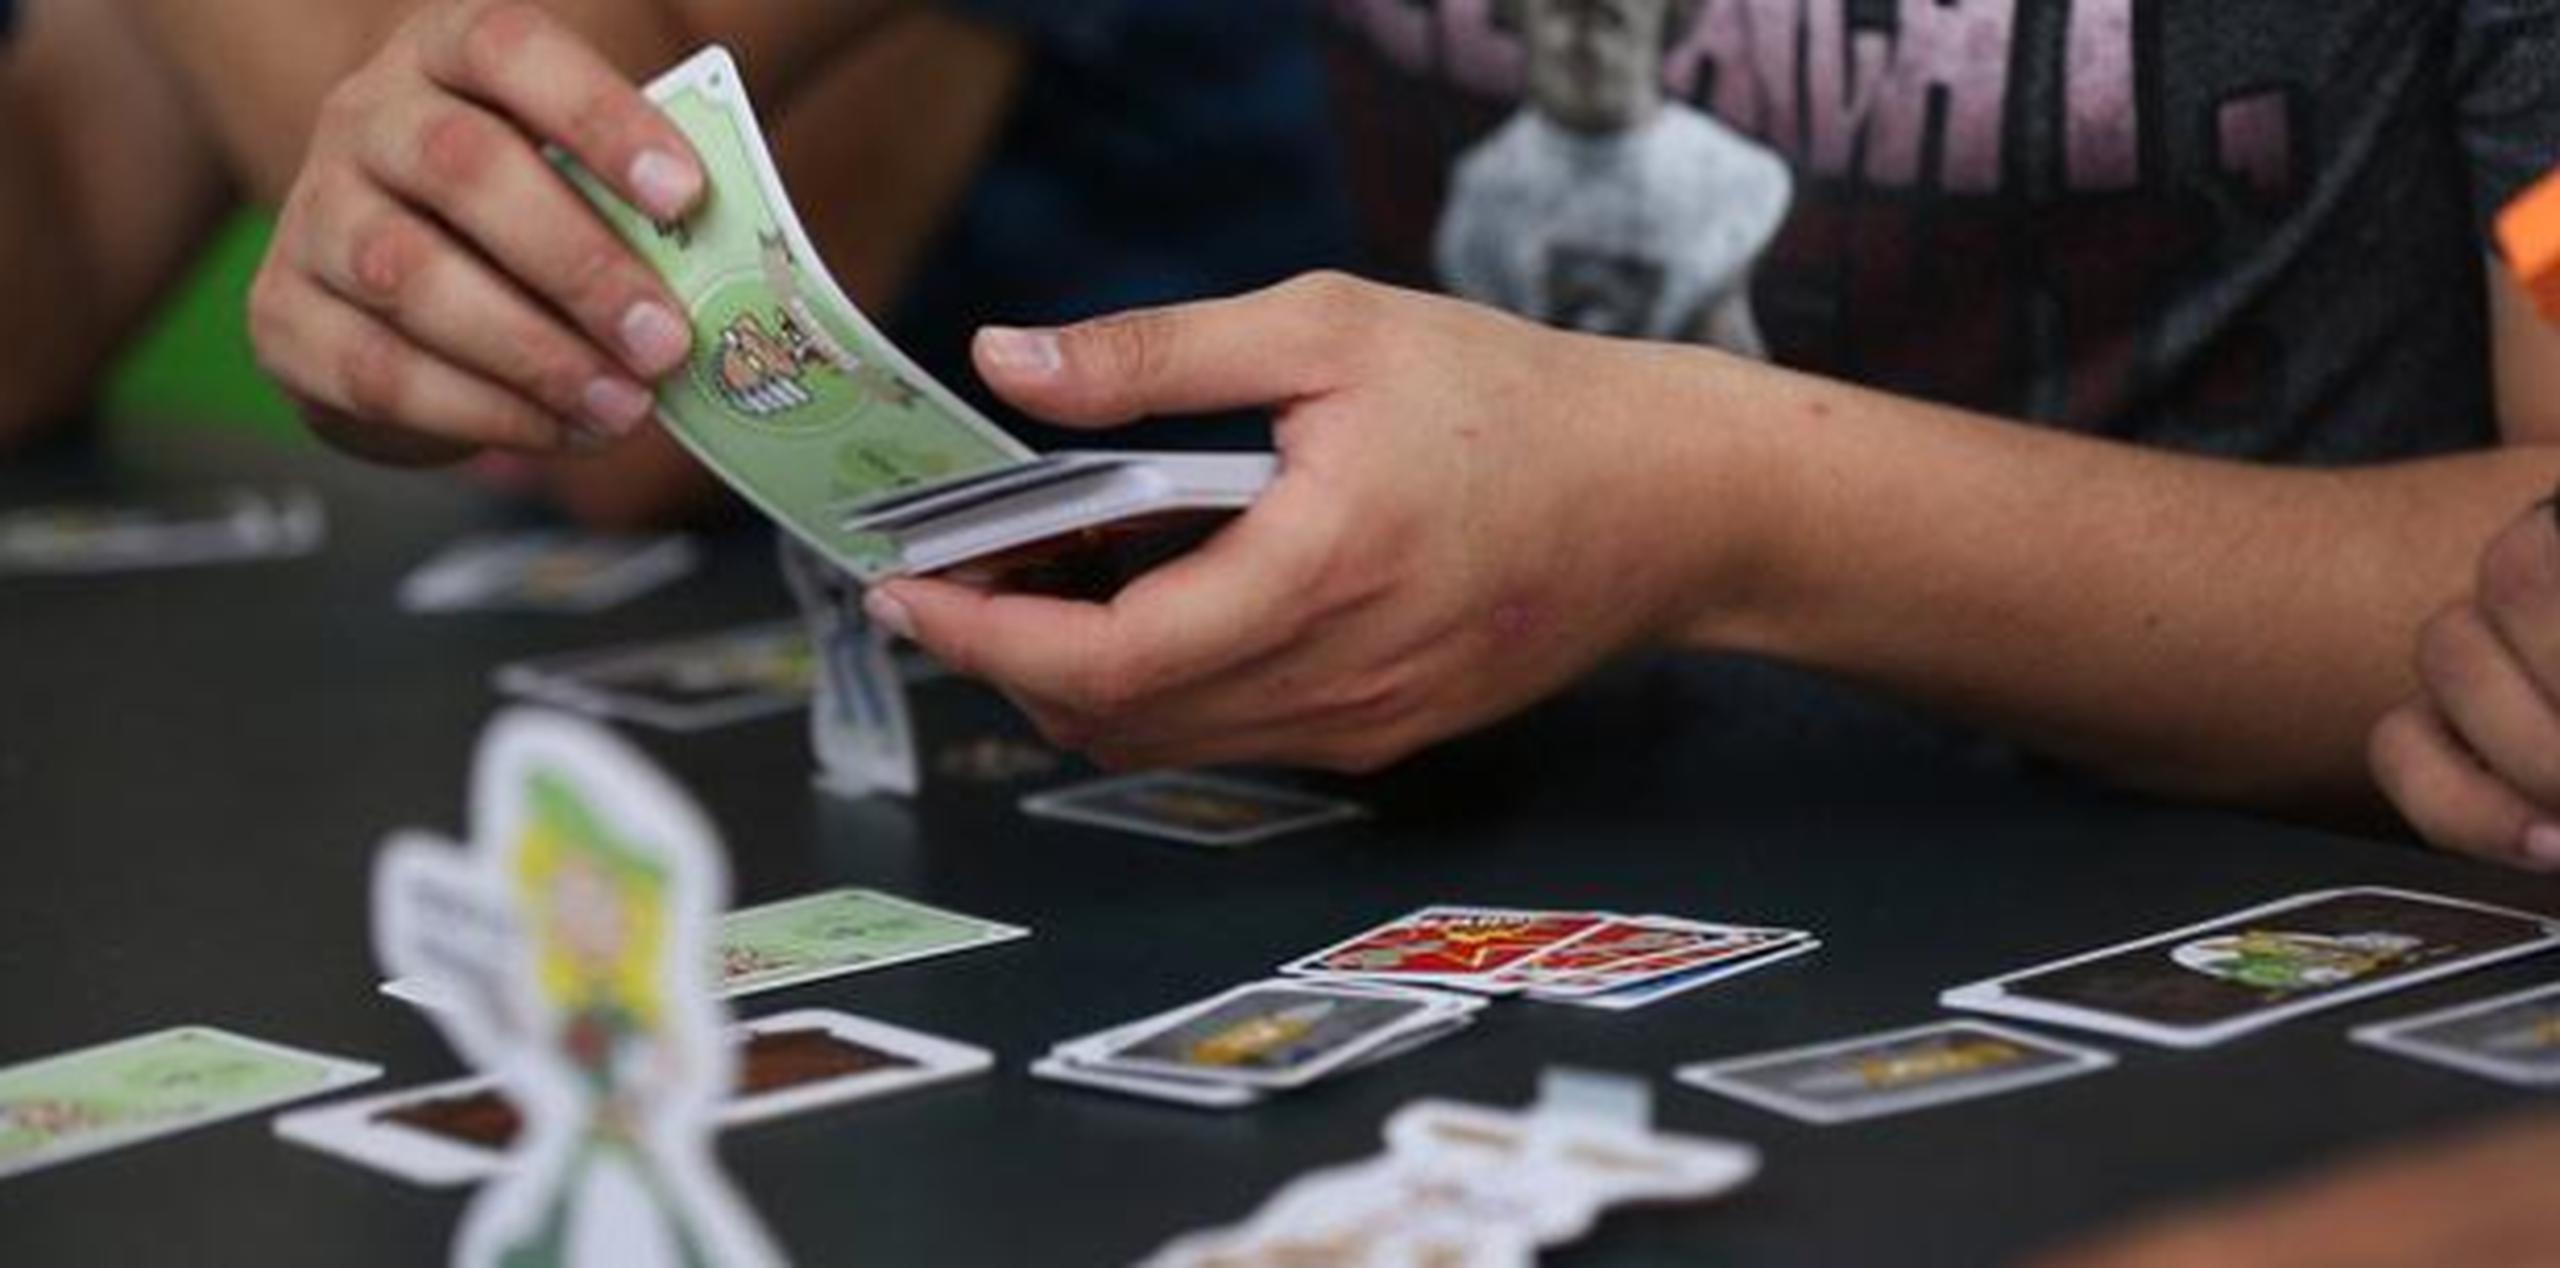 Los juegos de mesa son una de numerosas opciones económicas para entretenerte sin gastar mucho. (Archivo)